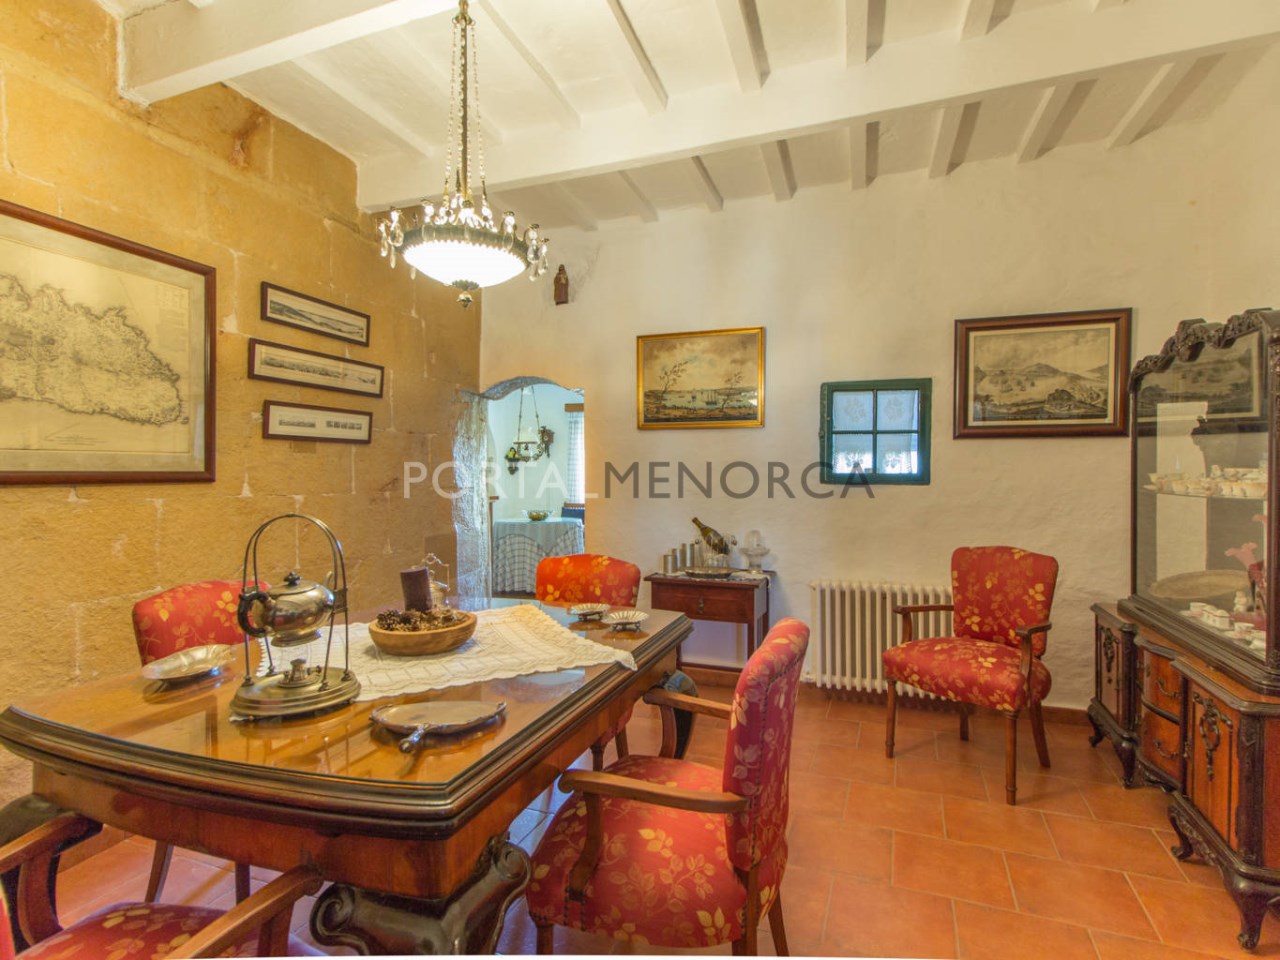 Casa de campo en venta en Menorca - Planta baja (17)